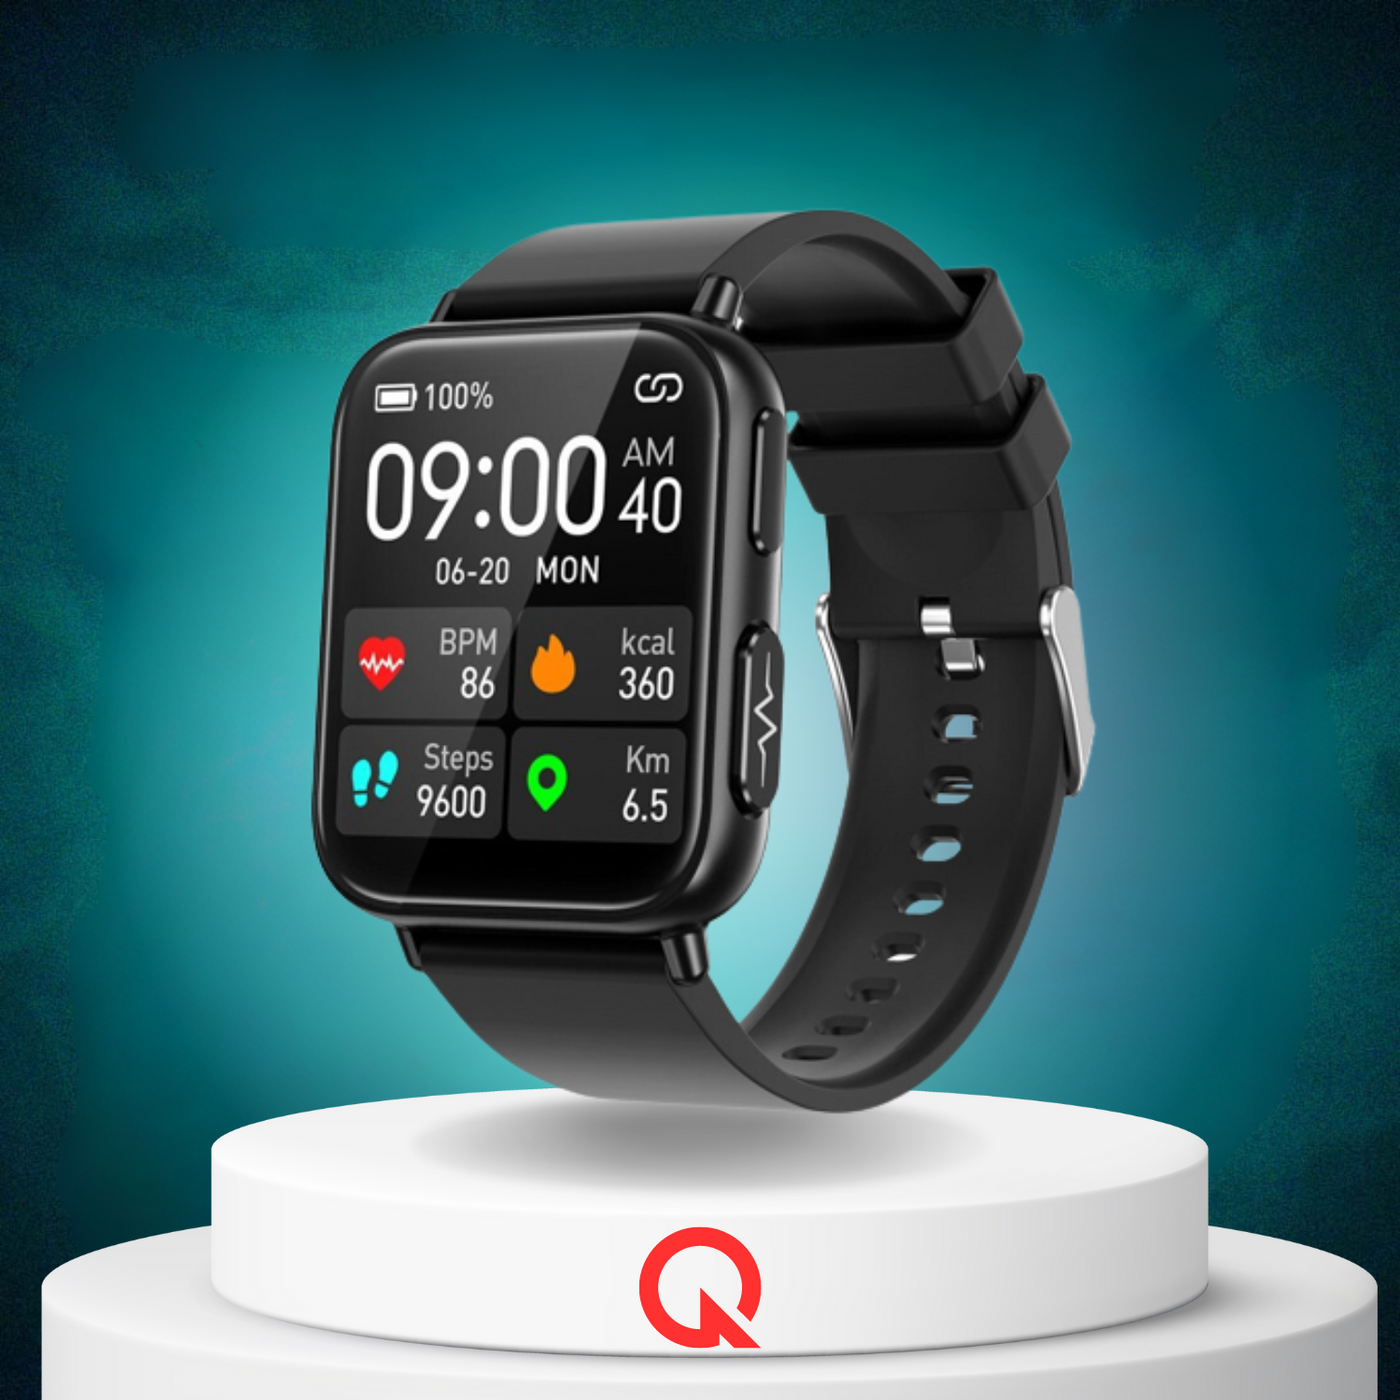 QUANTYVO™ CARE Plus 2 - Non-Invasive Blood Glucose Monitoring Smartwatch